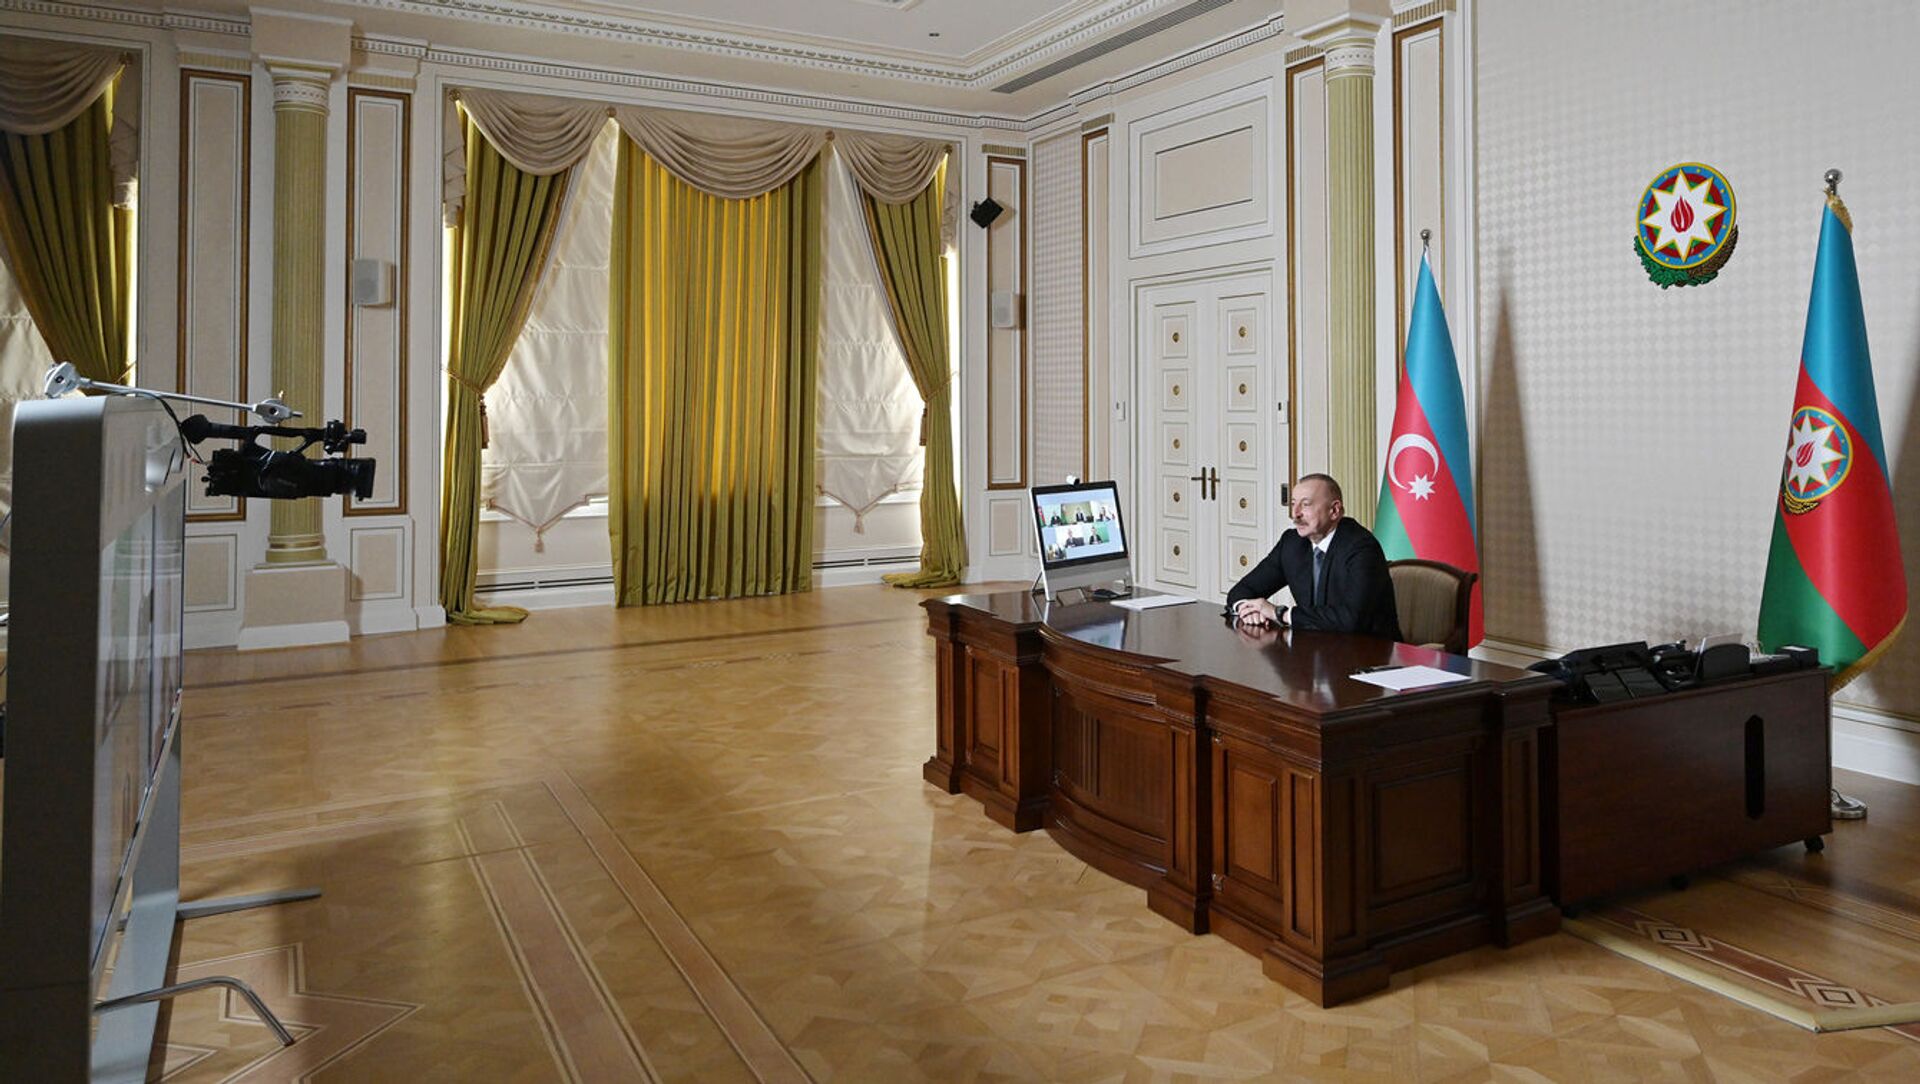 Видеоконференция между президентом Ильхамом Алиевым и руководителями компании Signify  - Sputnik Азербайджан, 1920, 26.02.2021